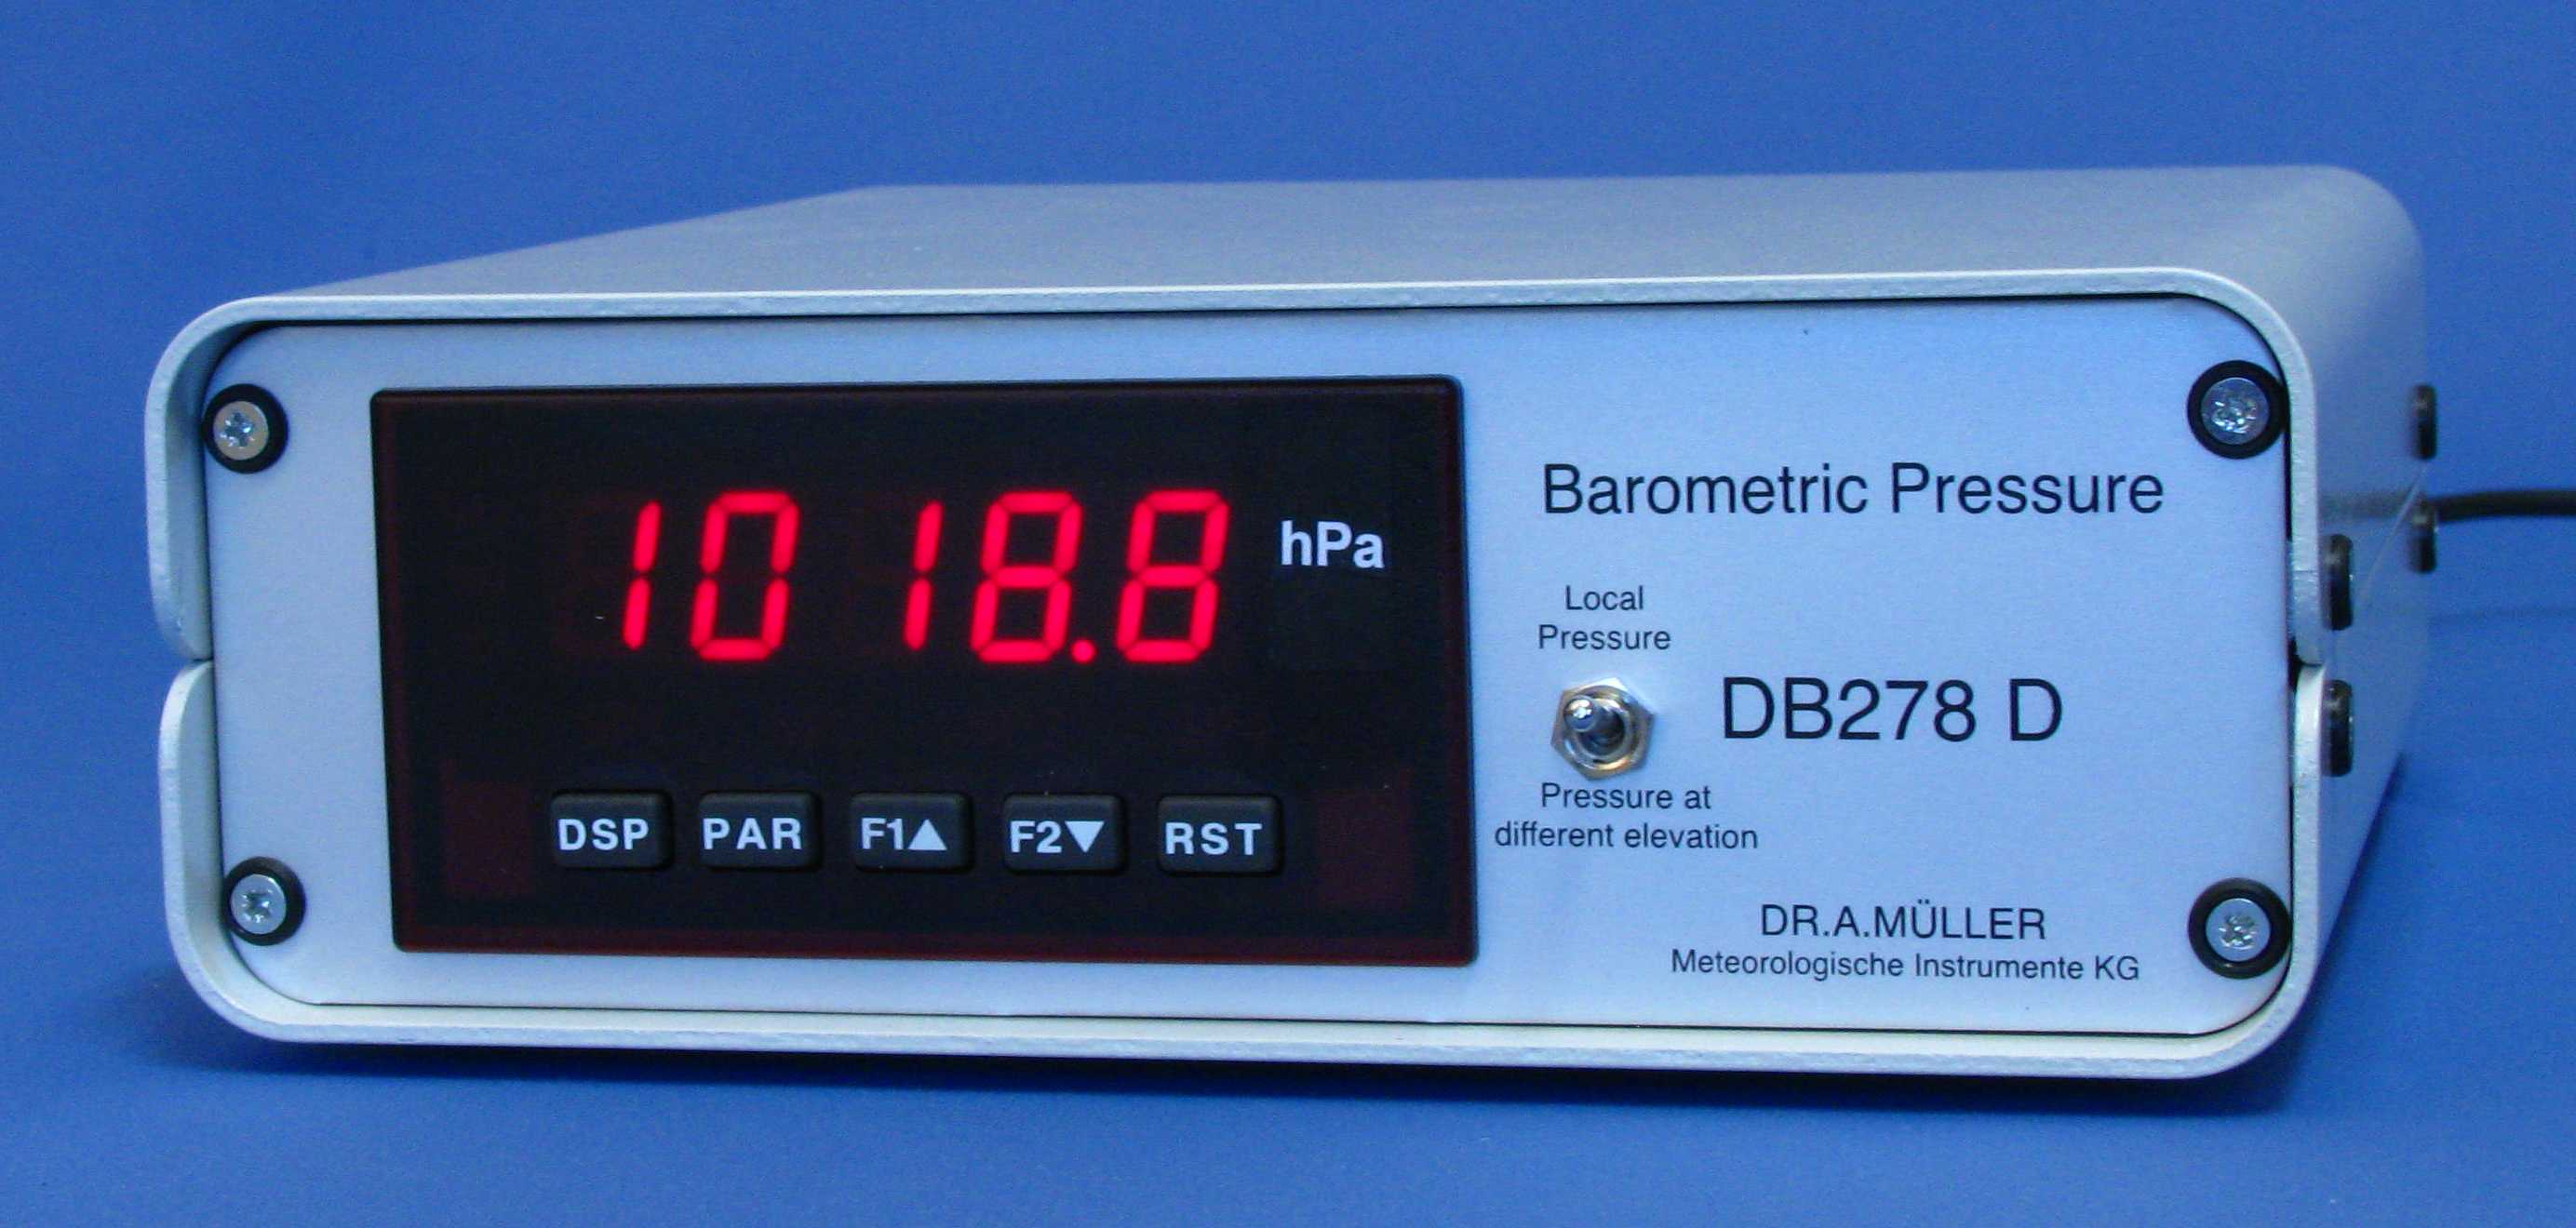 digital barometer images